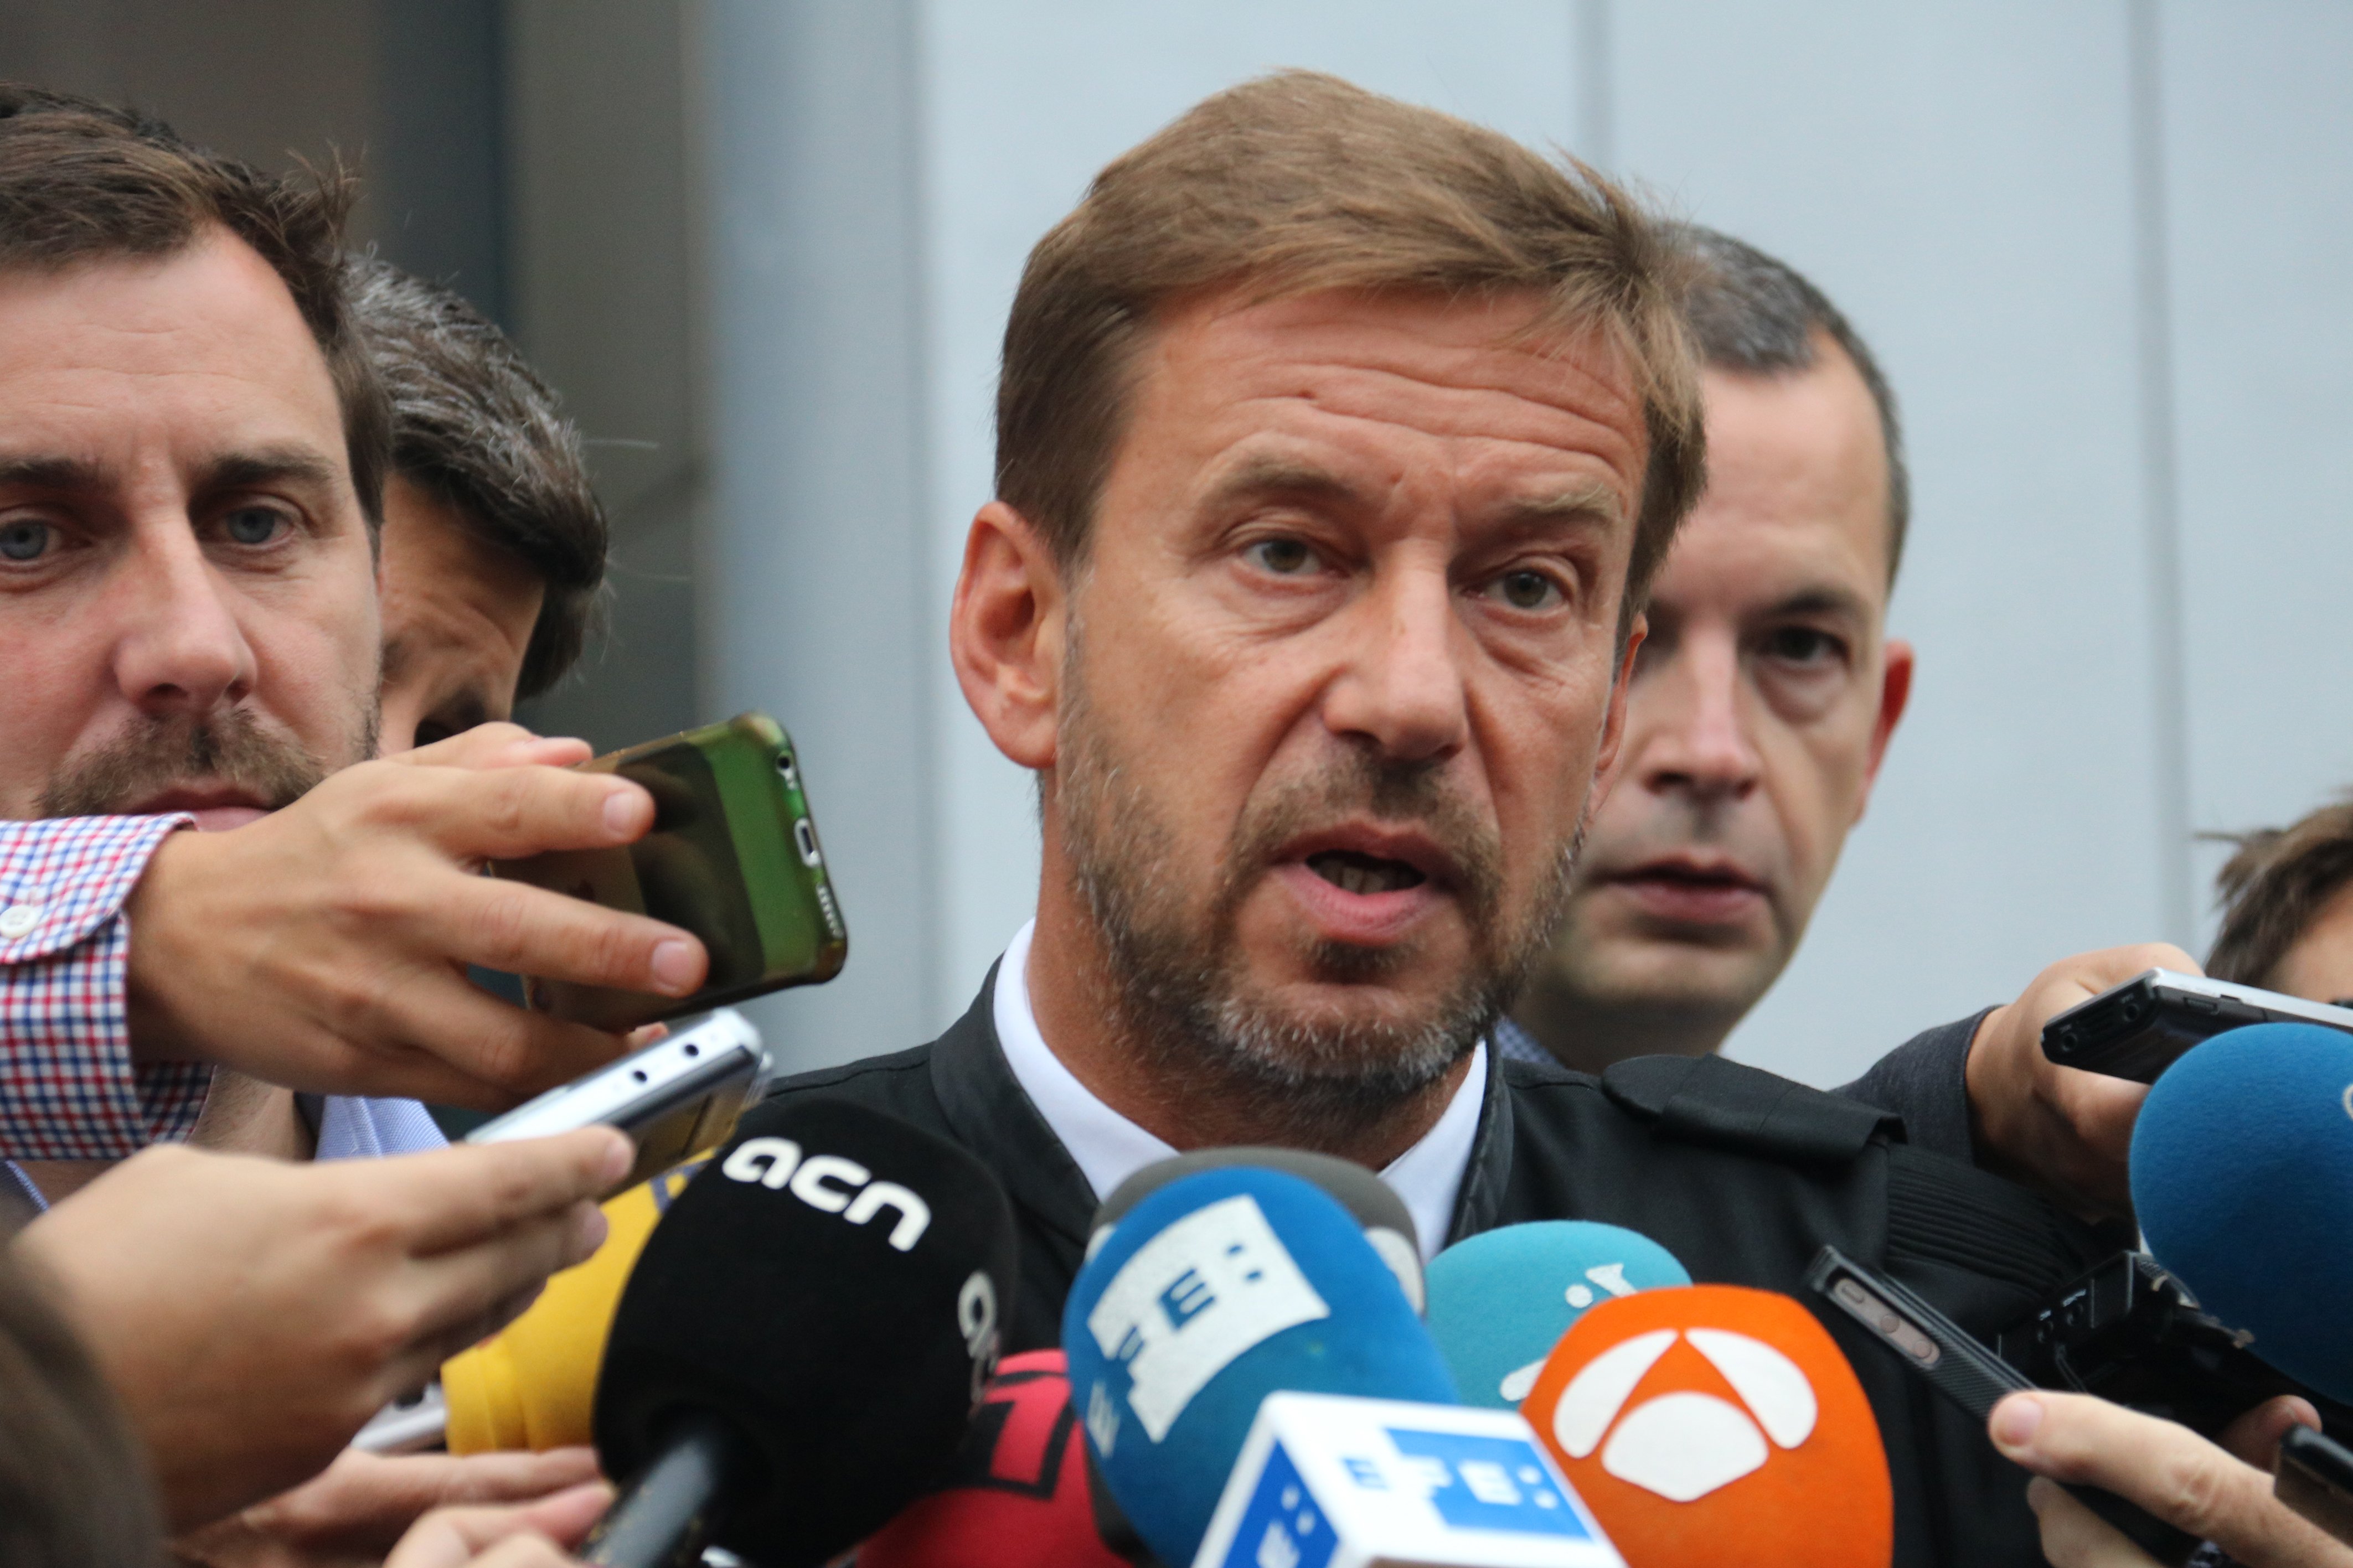 Marchand: "Espanya s'ha posicionat com un estat criminal a nivell internacional"